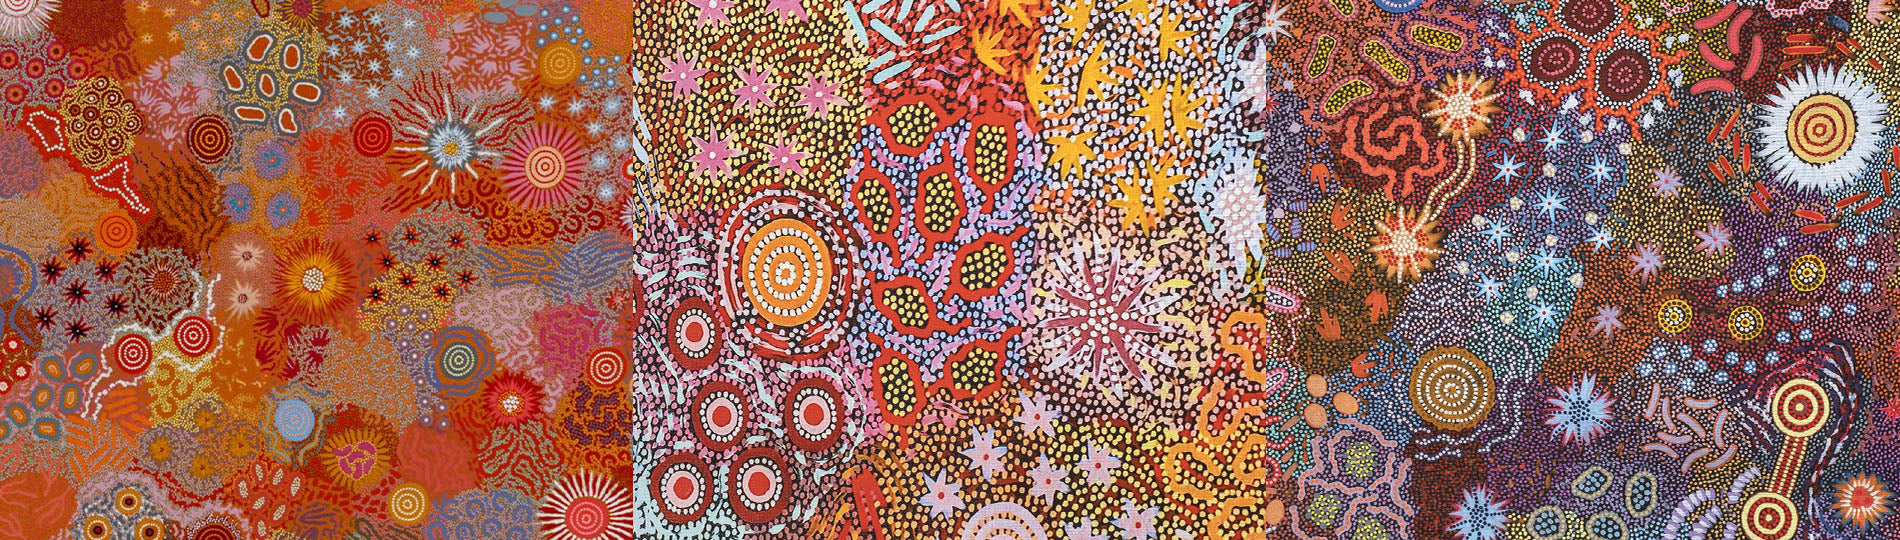 Artwork design of Aboriginal artist Michelle Possum